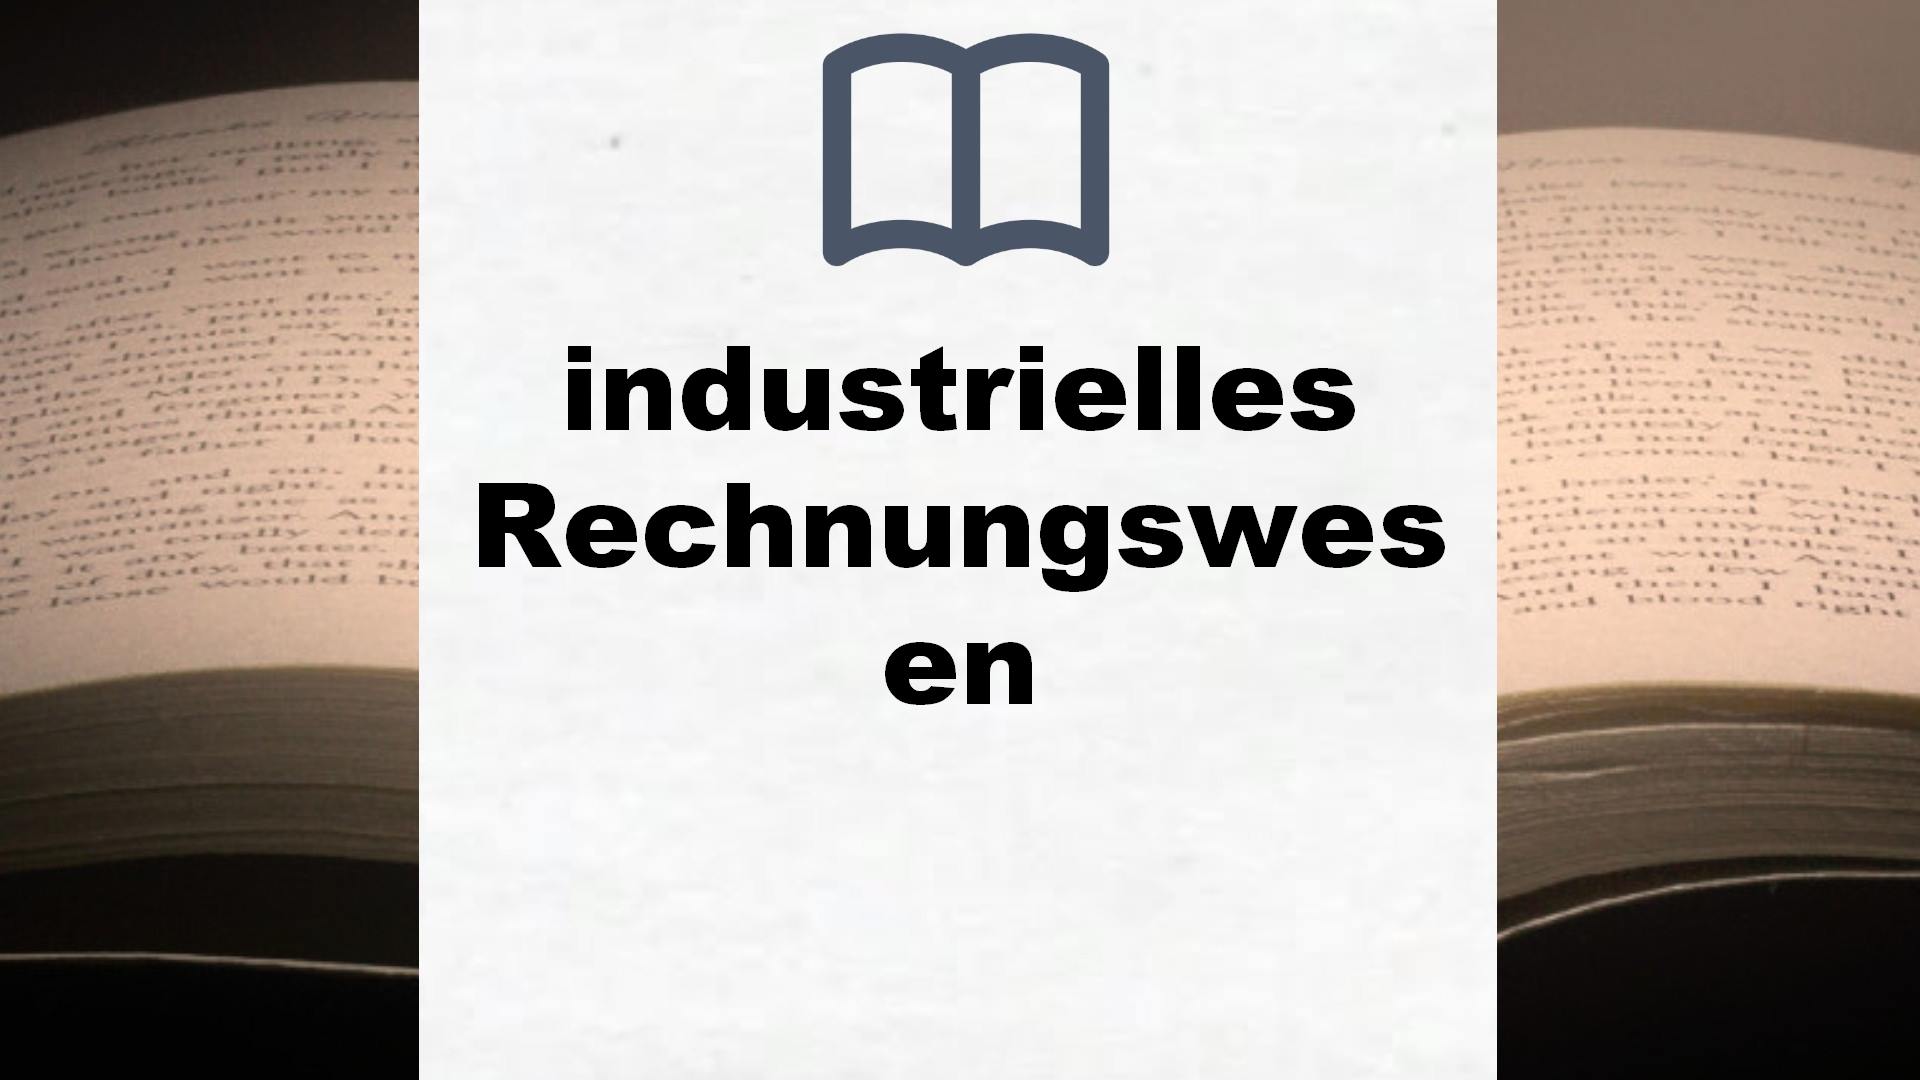 Bücher über industrielles Rechnungswesen